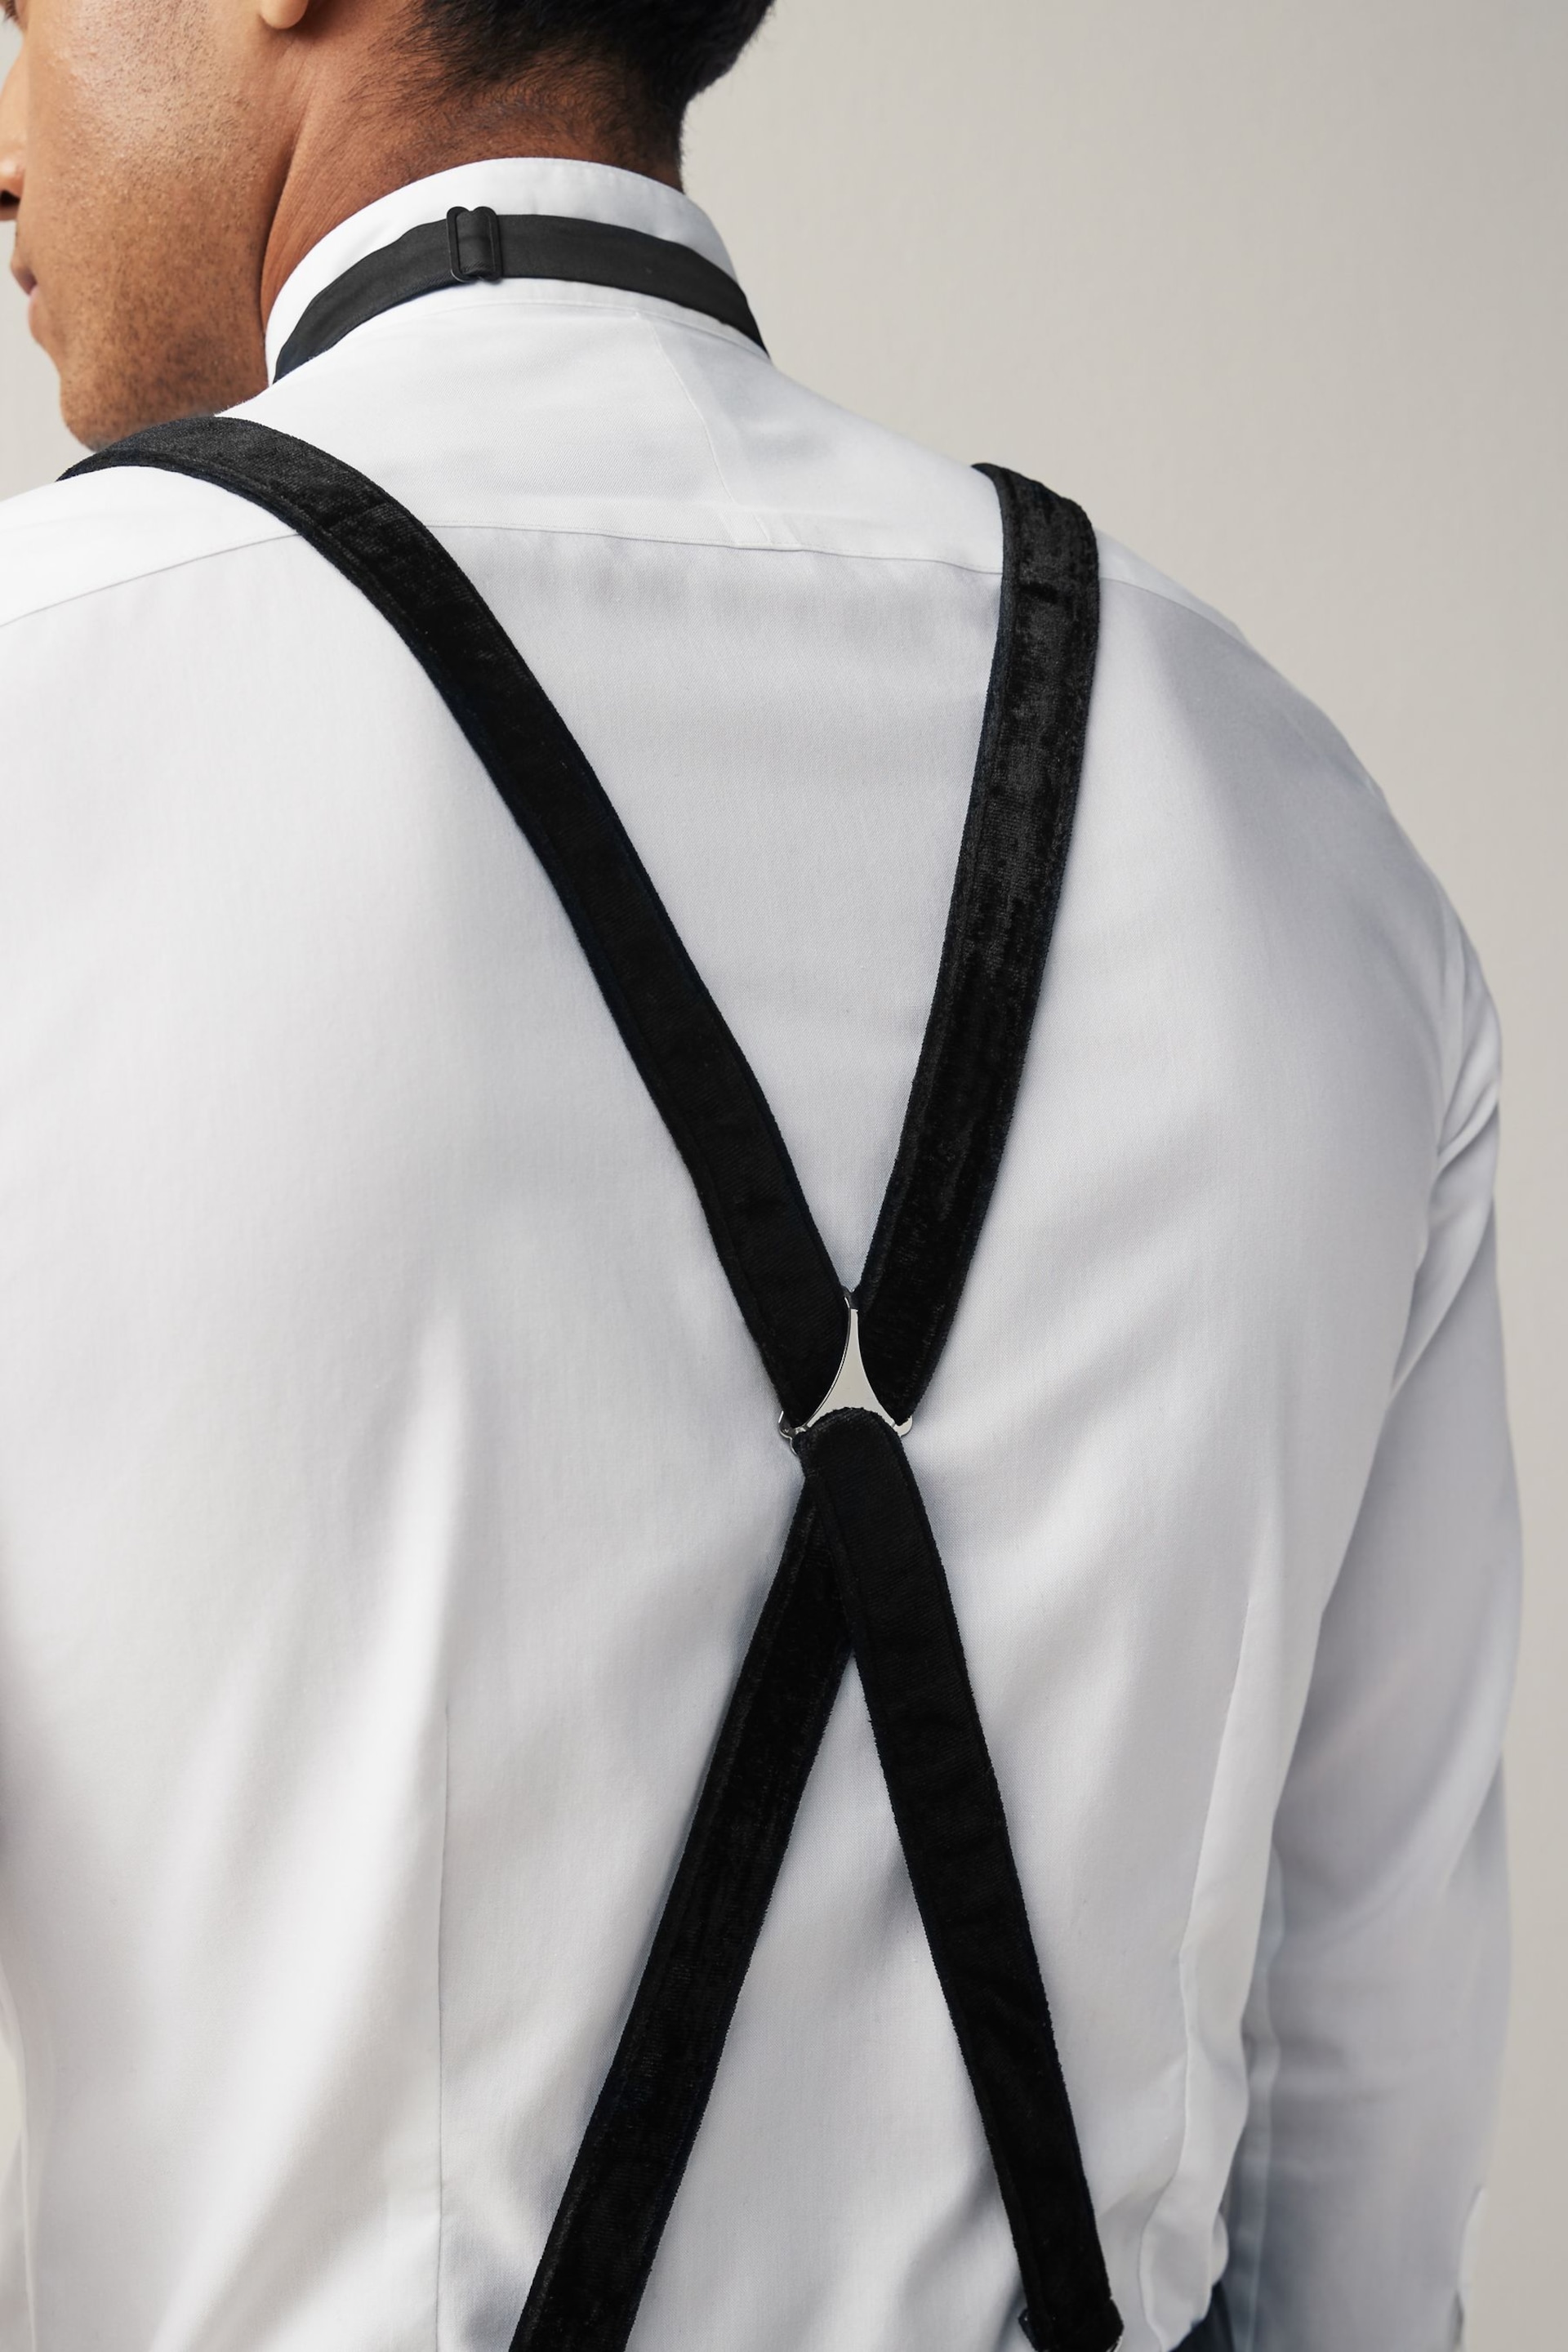 Black Velvet Bow Tie and Braces - Image 2 of 5